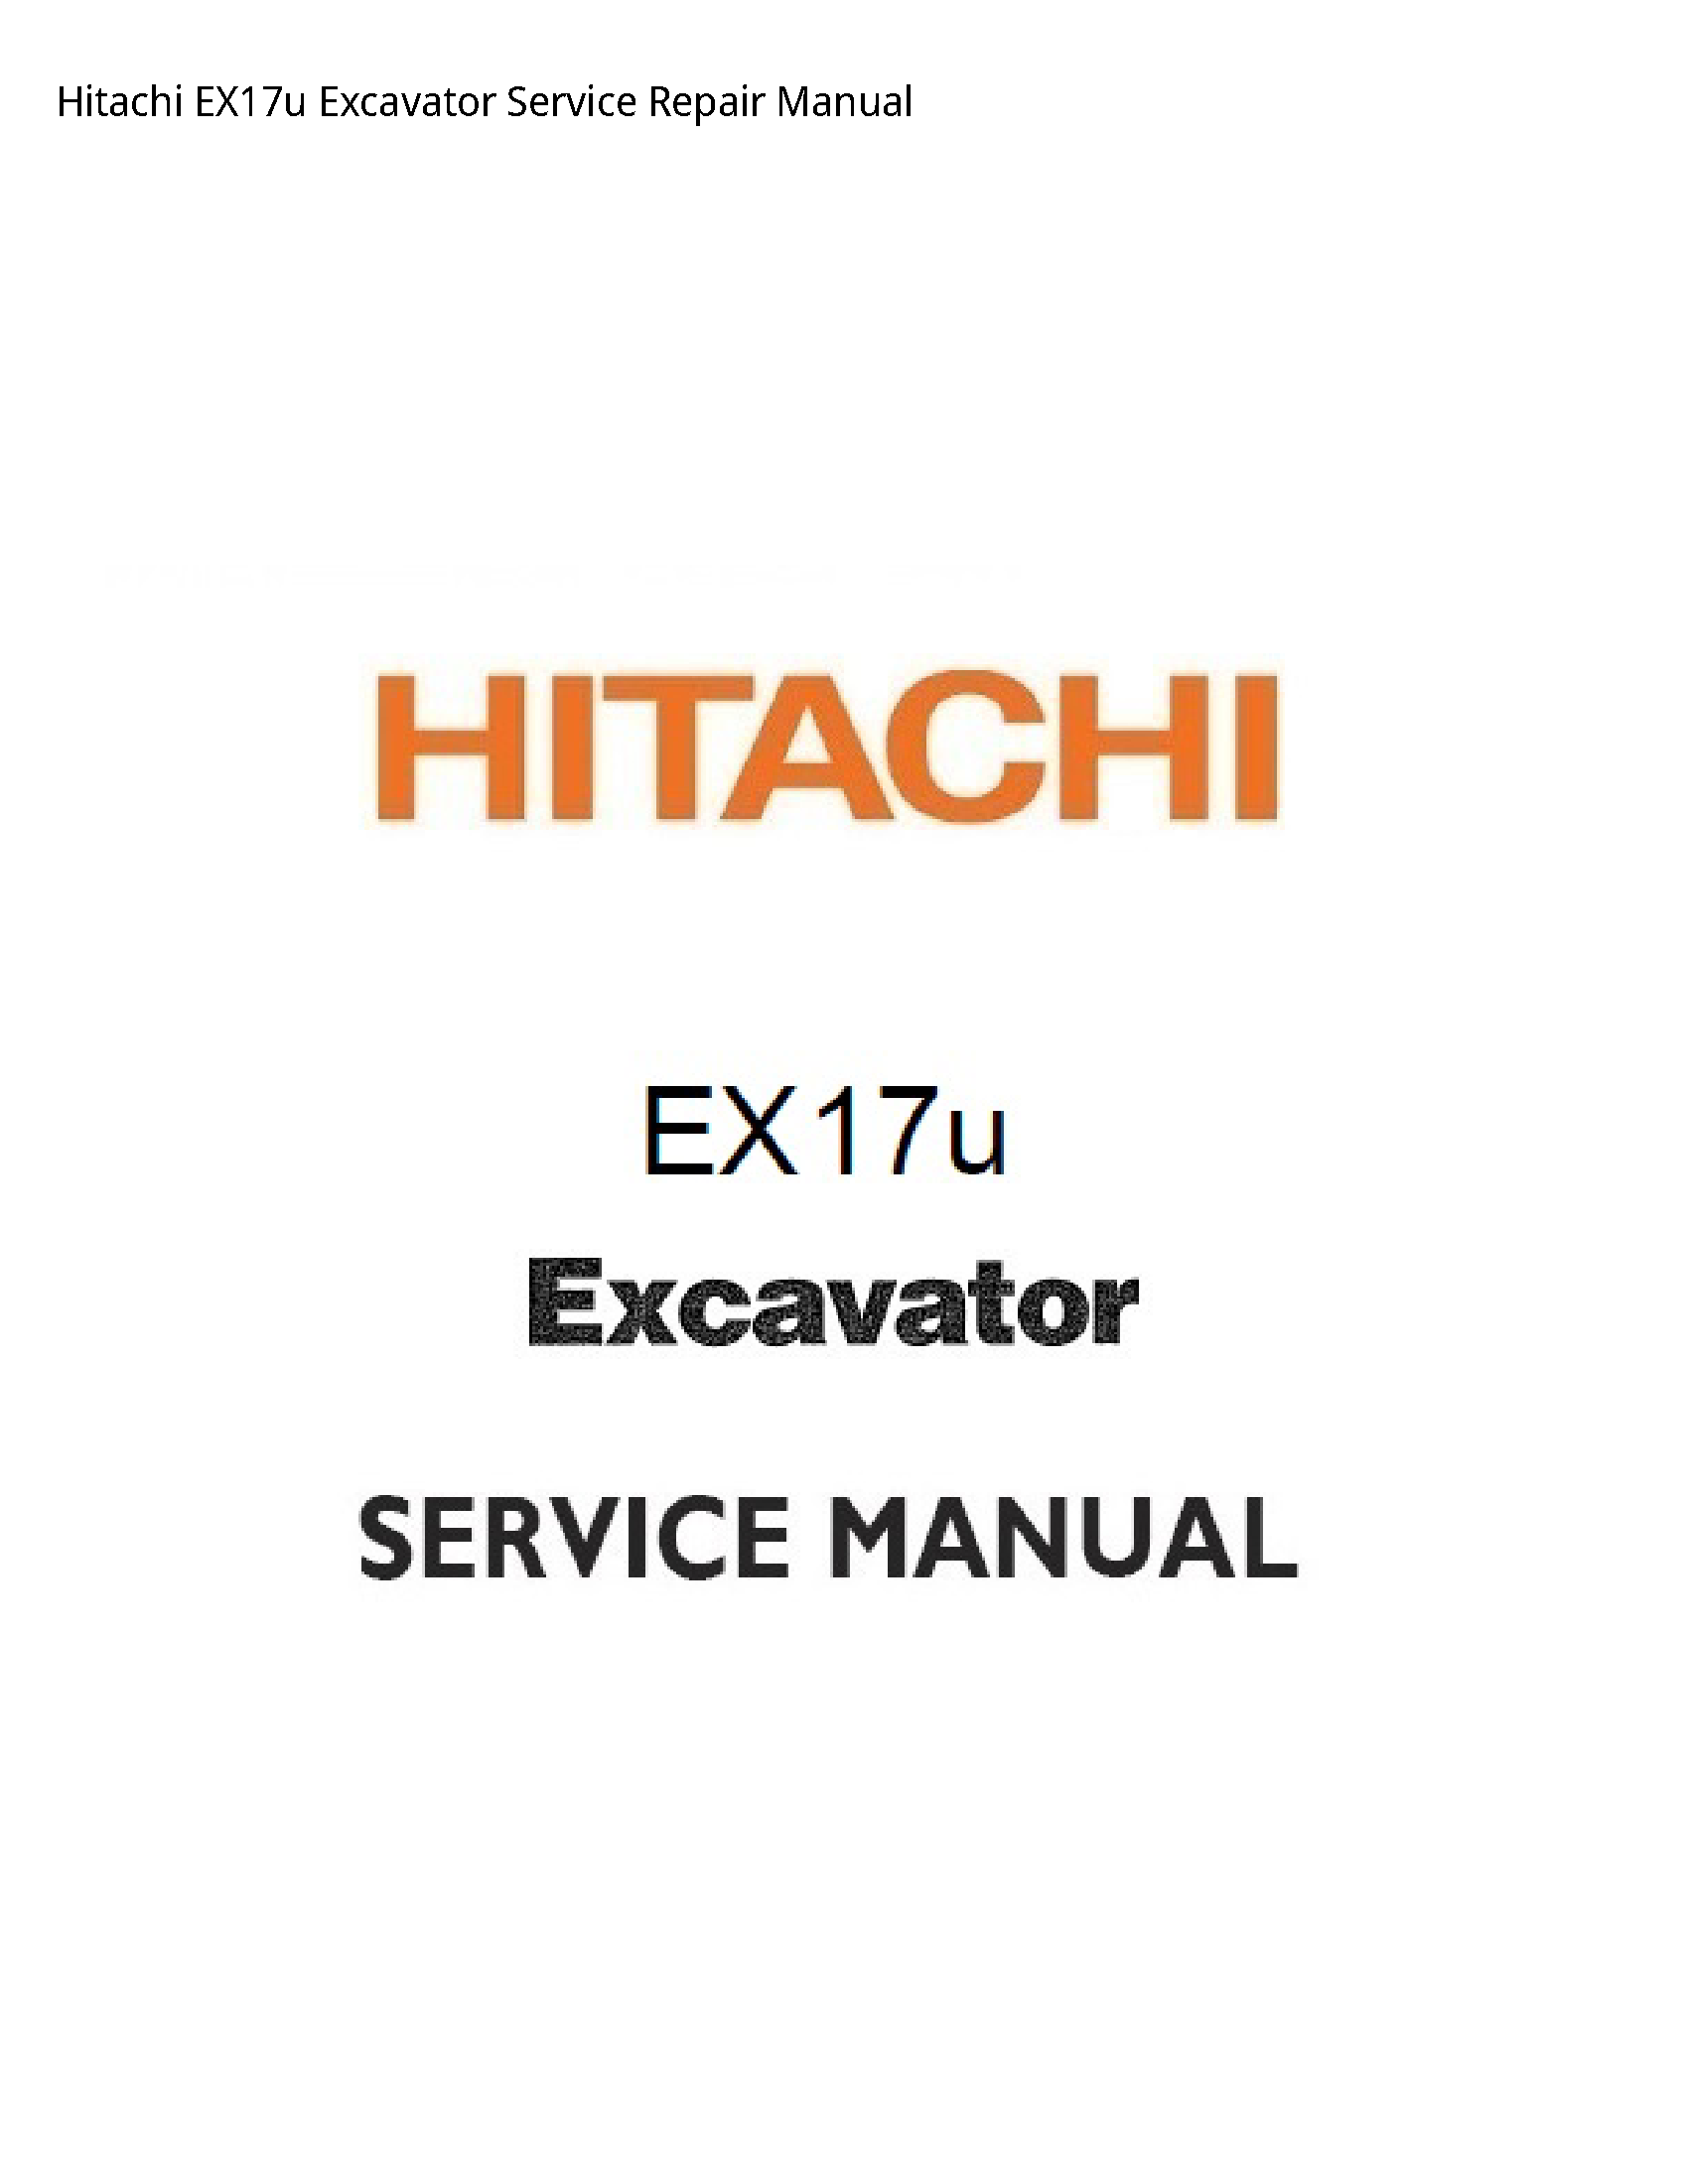 Hitachi EX17u Excavator manual